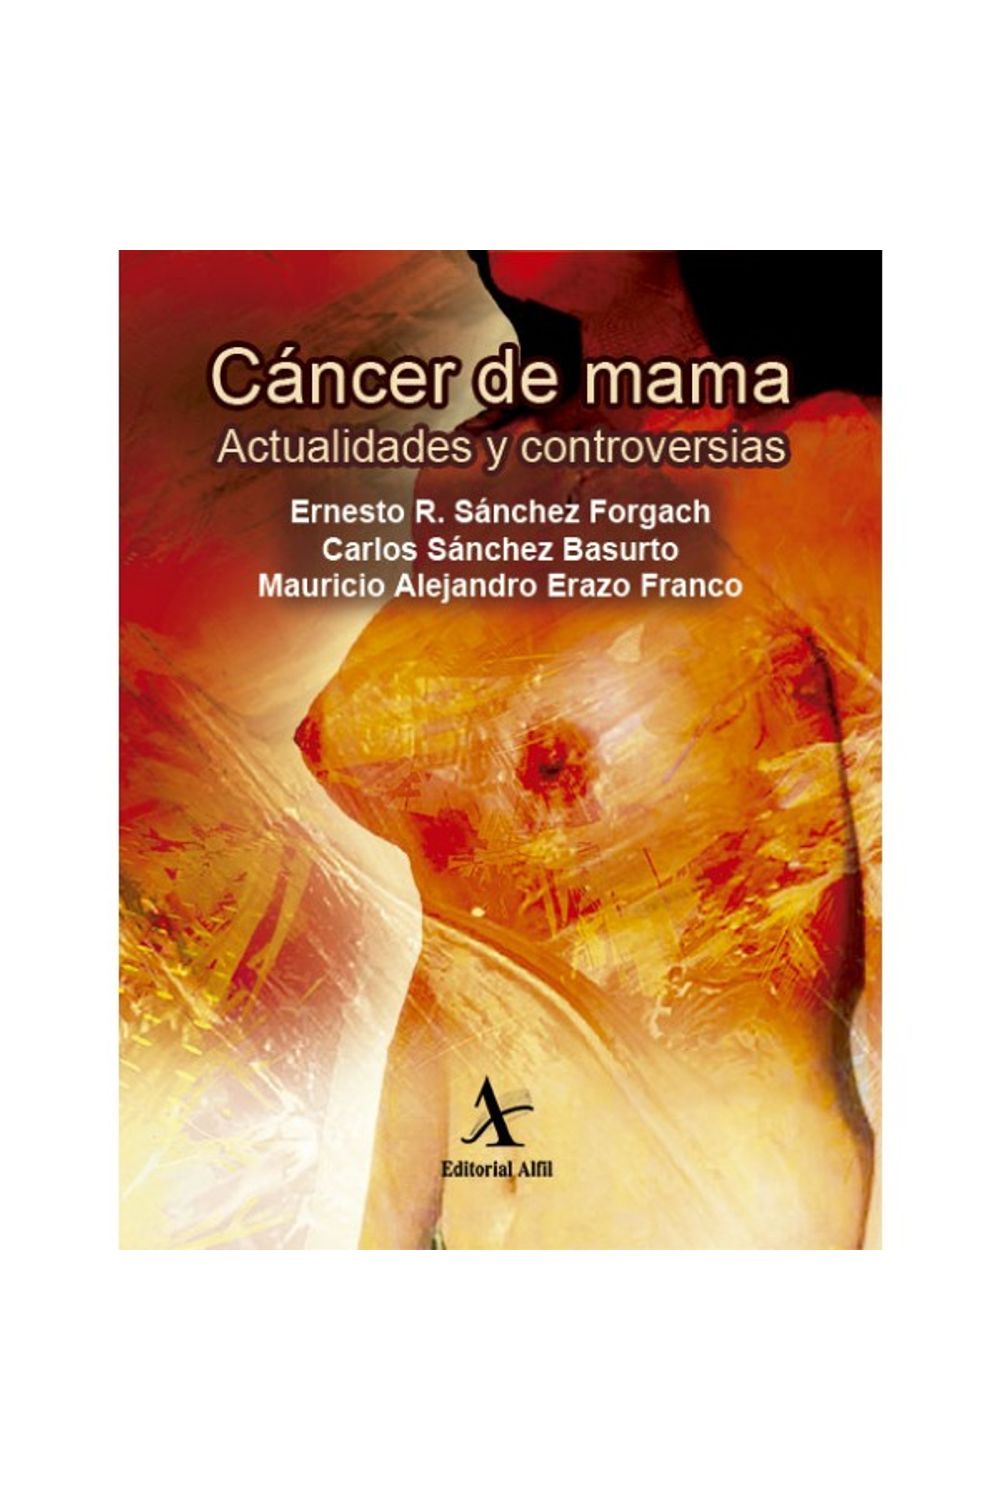 bm-cancer-de-mama-actualidades-y-controversias-editorial-alfil-9786077411345